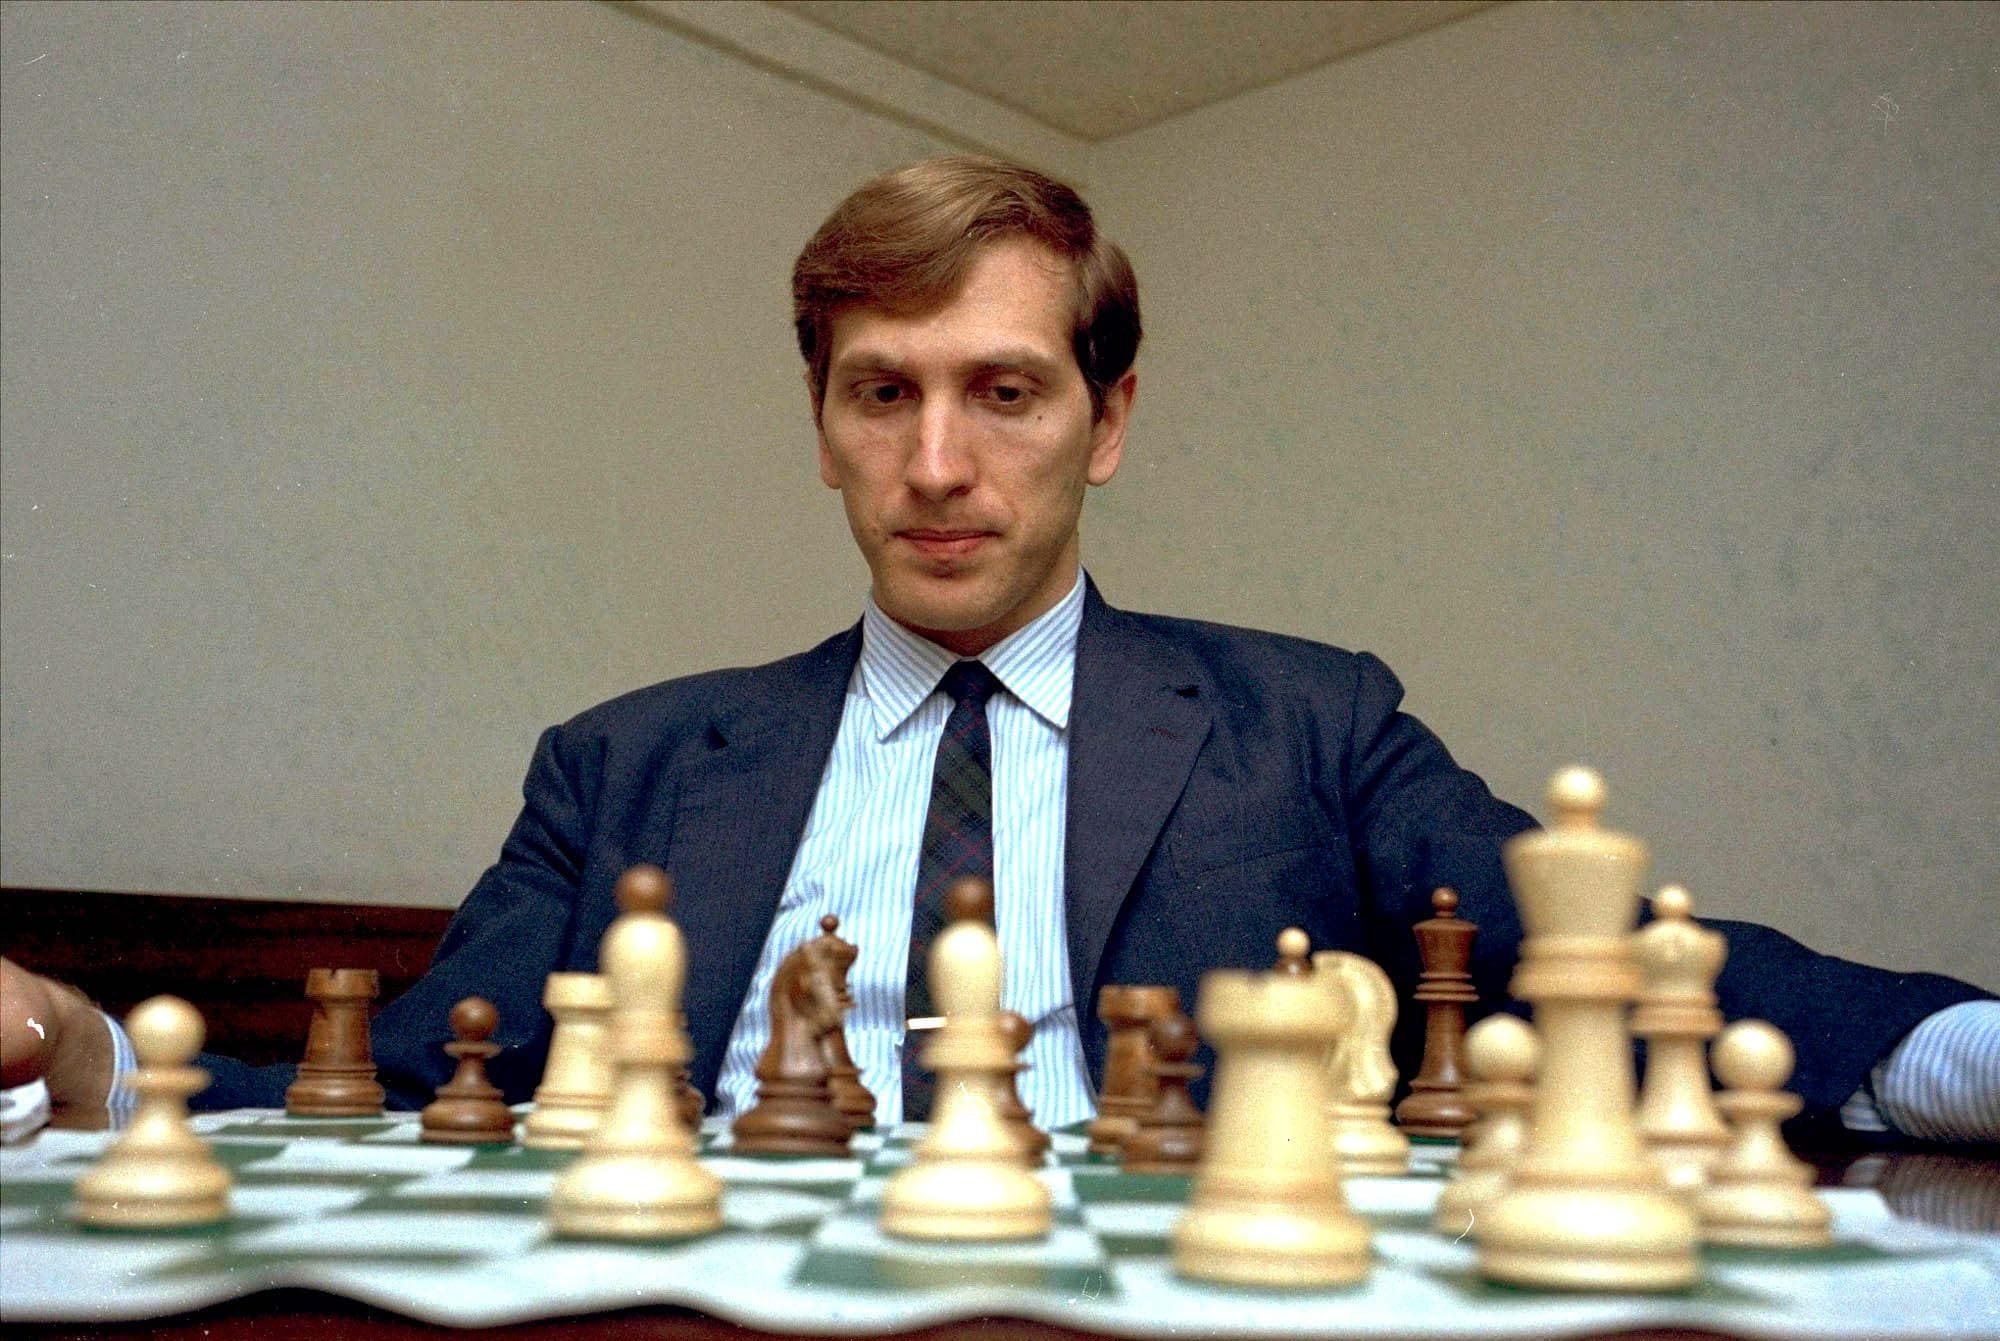 Bobby Fischer falleció hoy hace 10 años